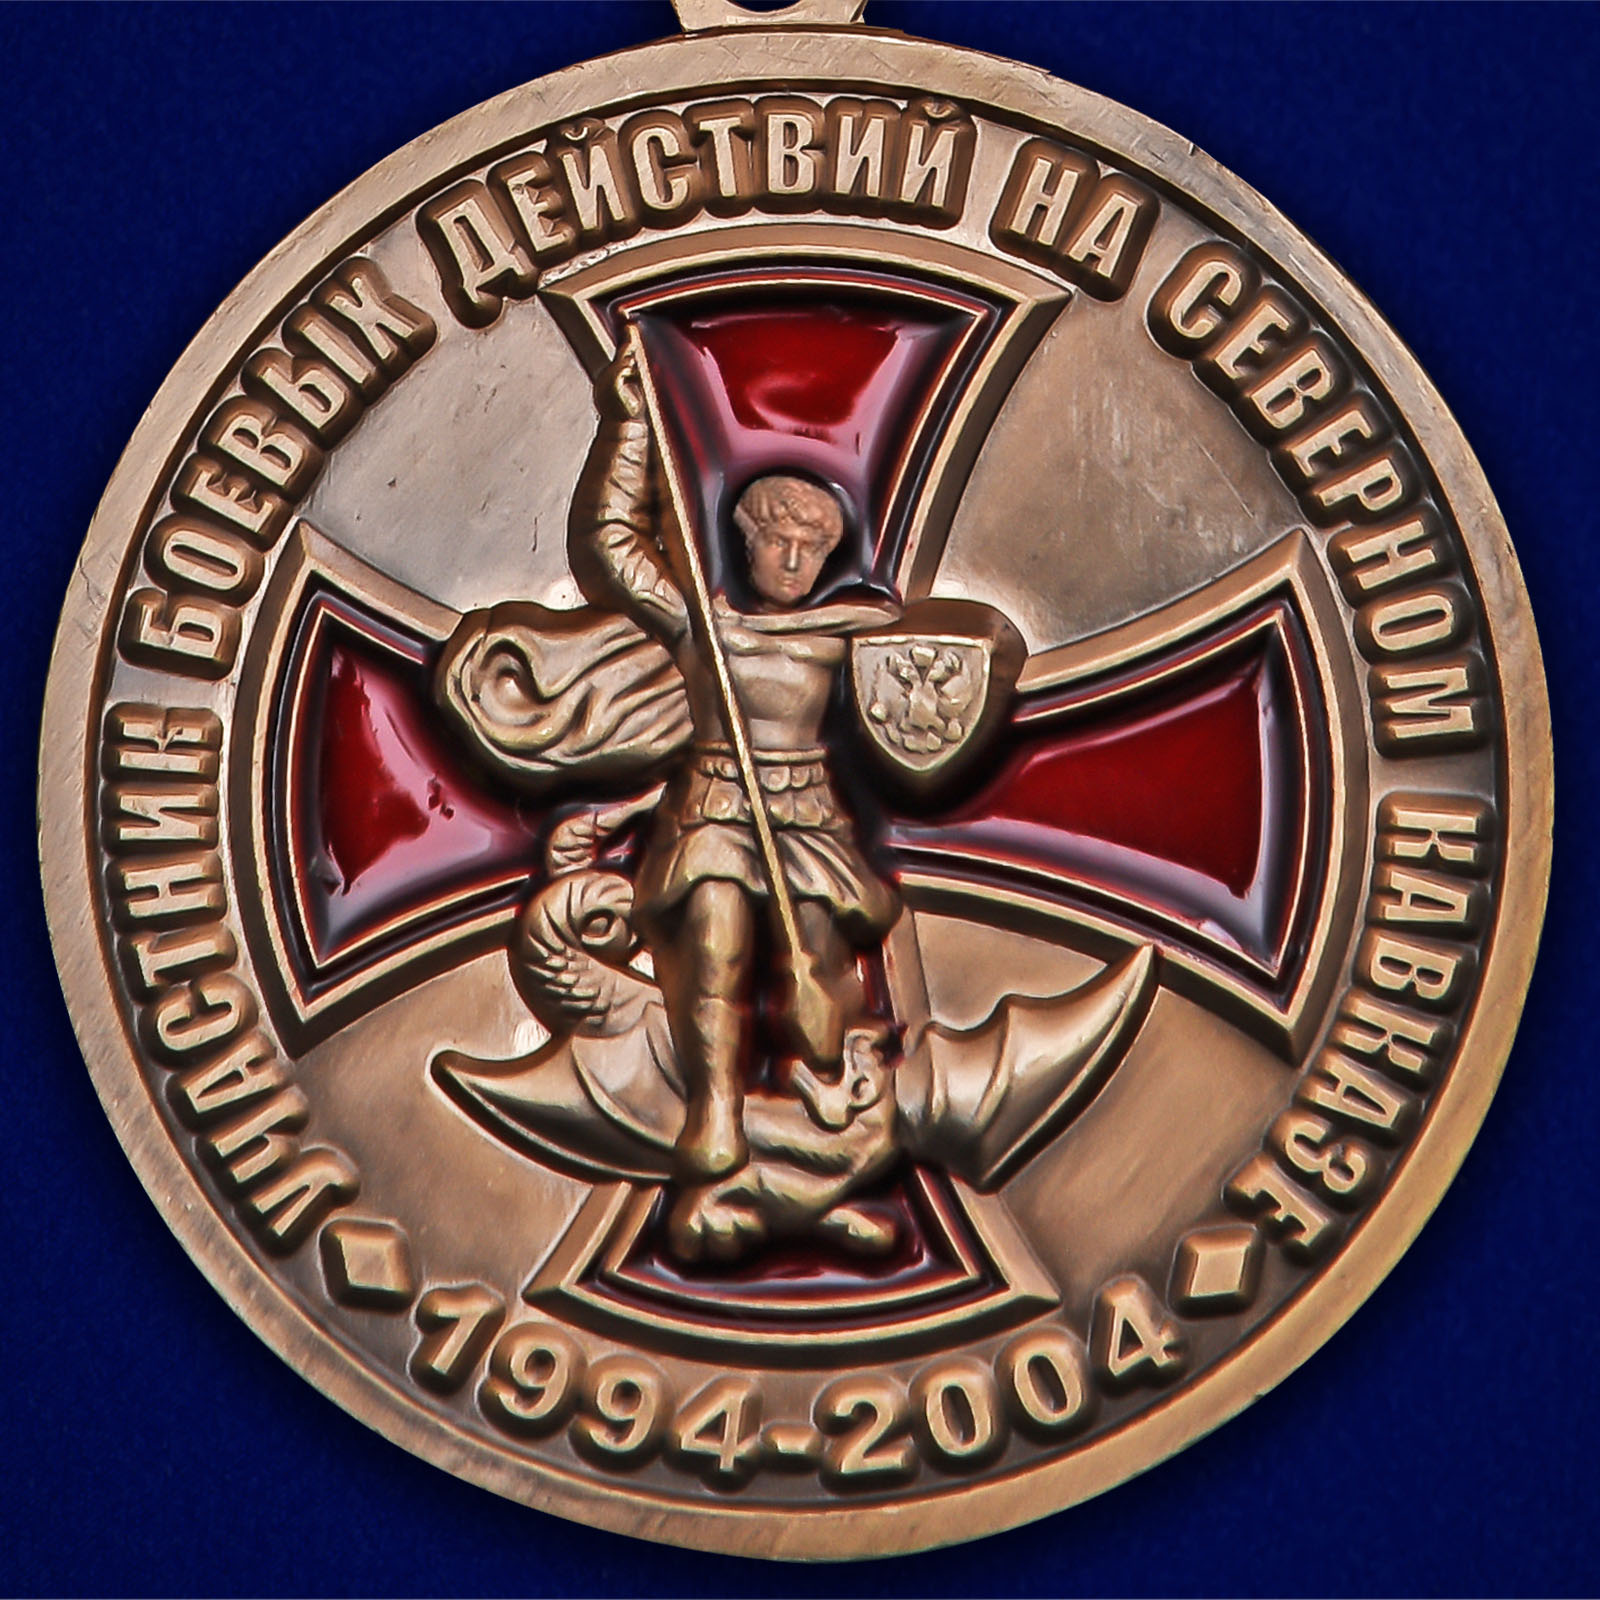 Медаль «Участник боевых действий на Северном Кавказе» 1994-2004 